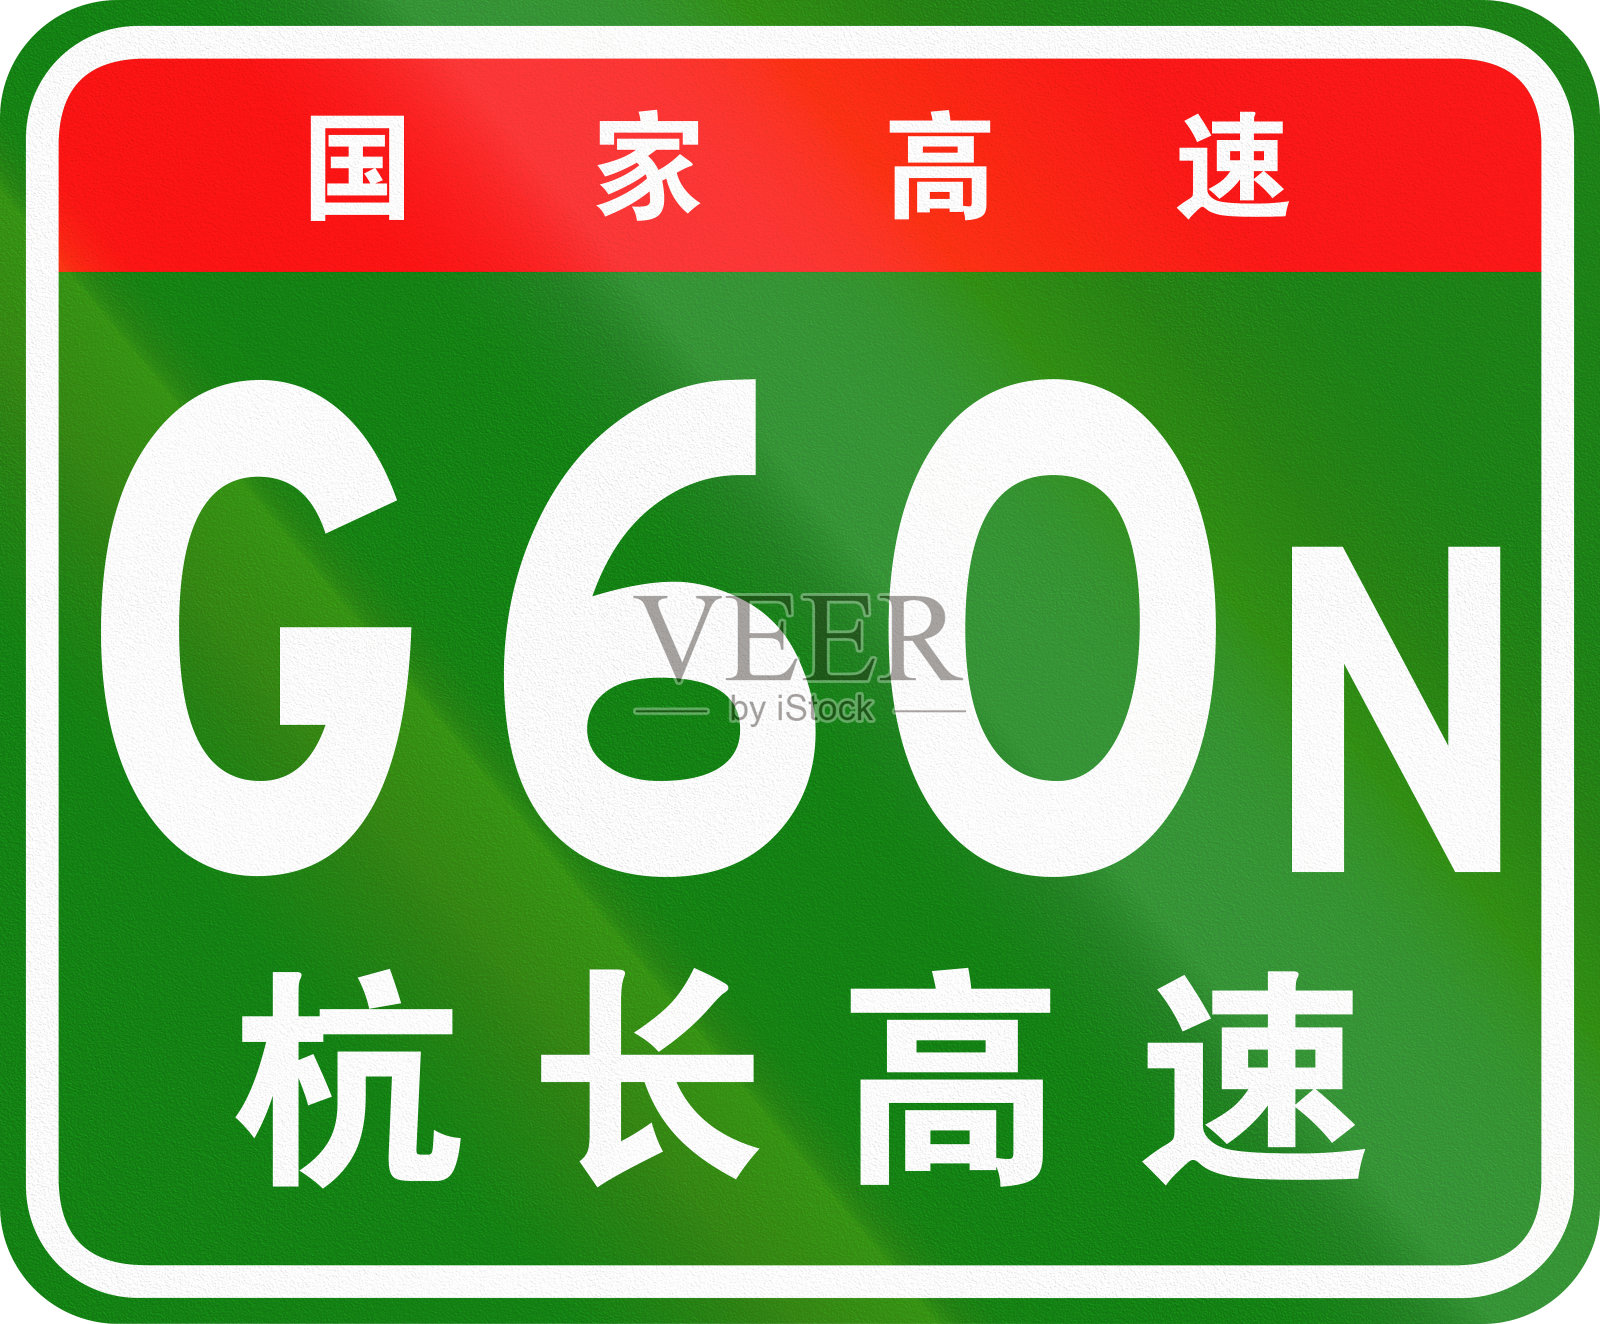 中文路盾——上面的字表示中国国道，下面的字是这条高速公路的名称——杭长沙高速插画图片素材